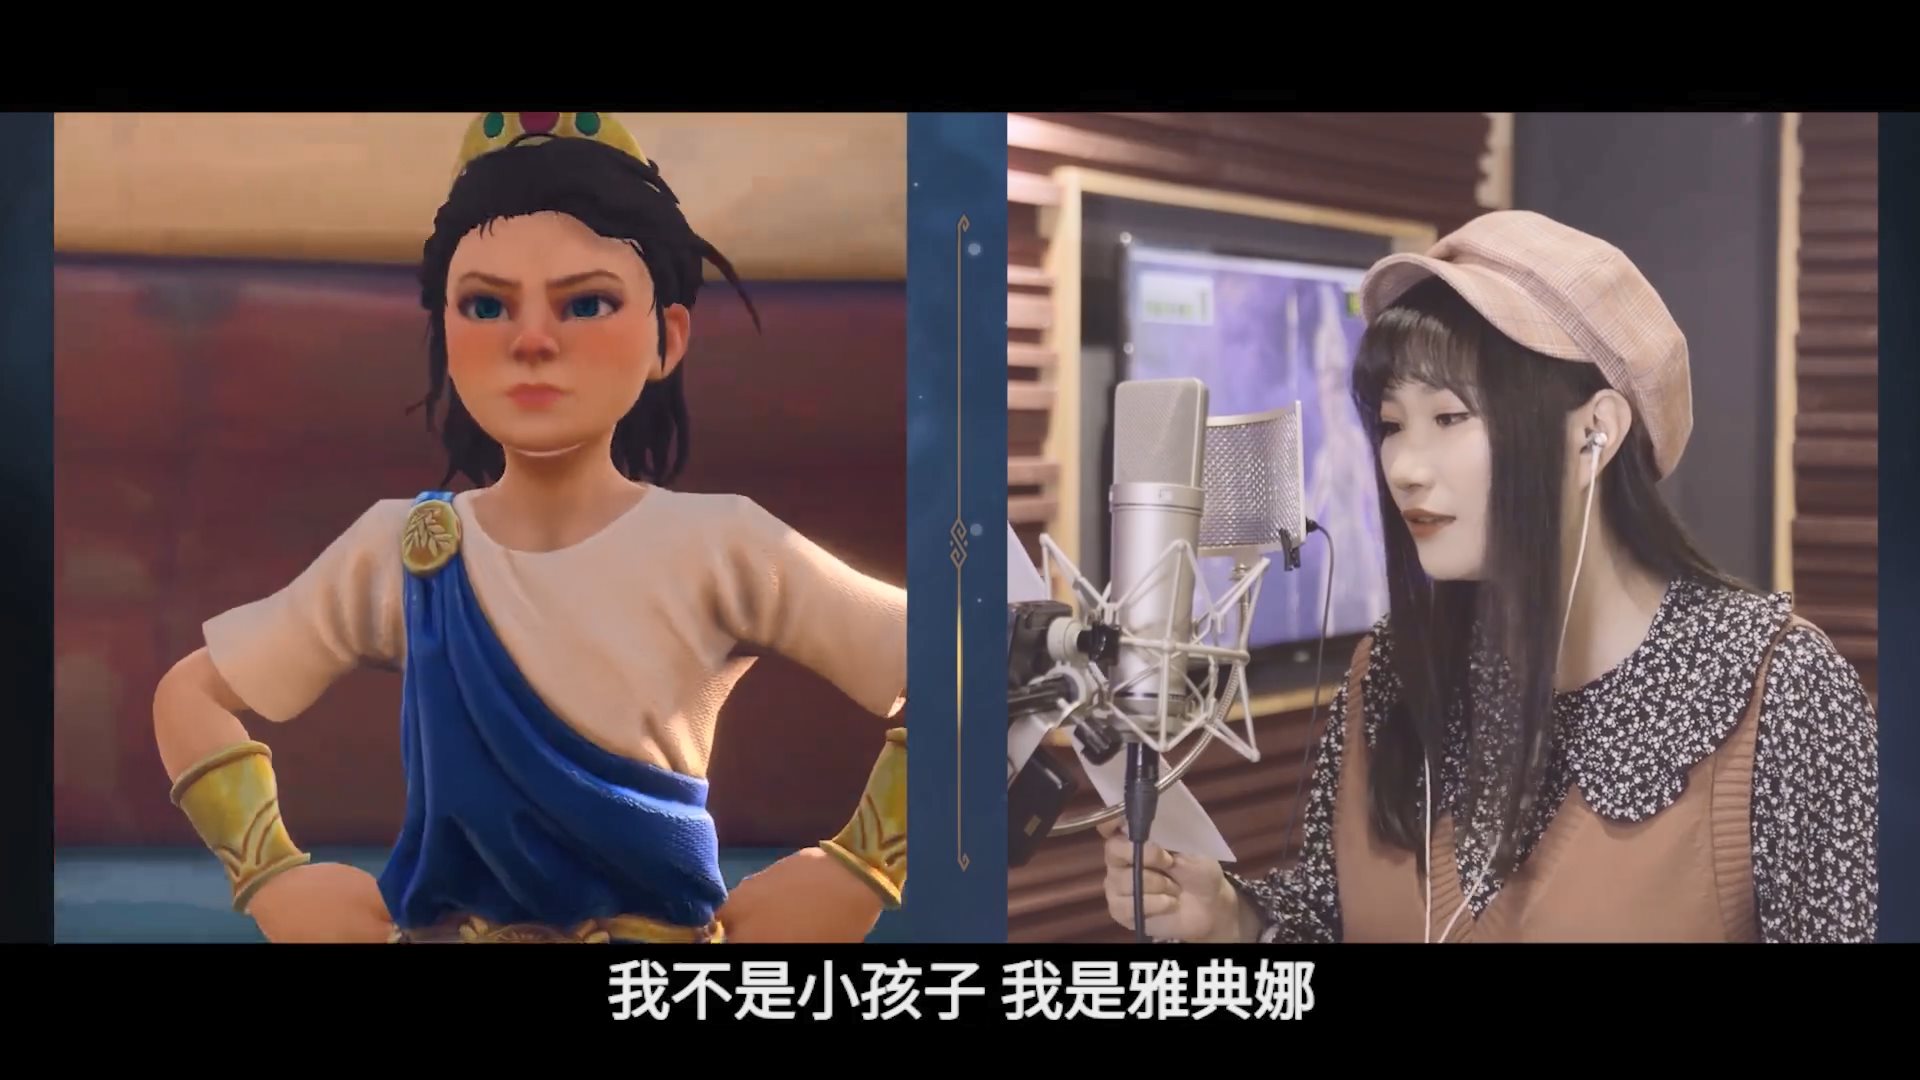 《渡神纪》中文配音幕后影像 提升中文玩家沉浸感